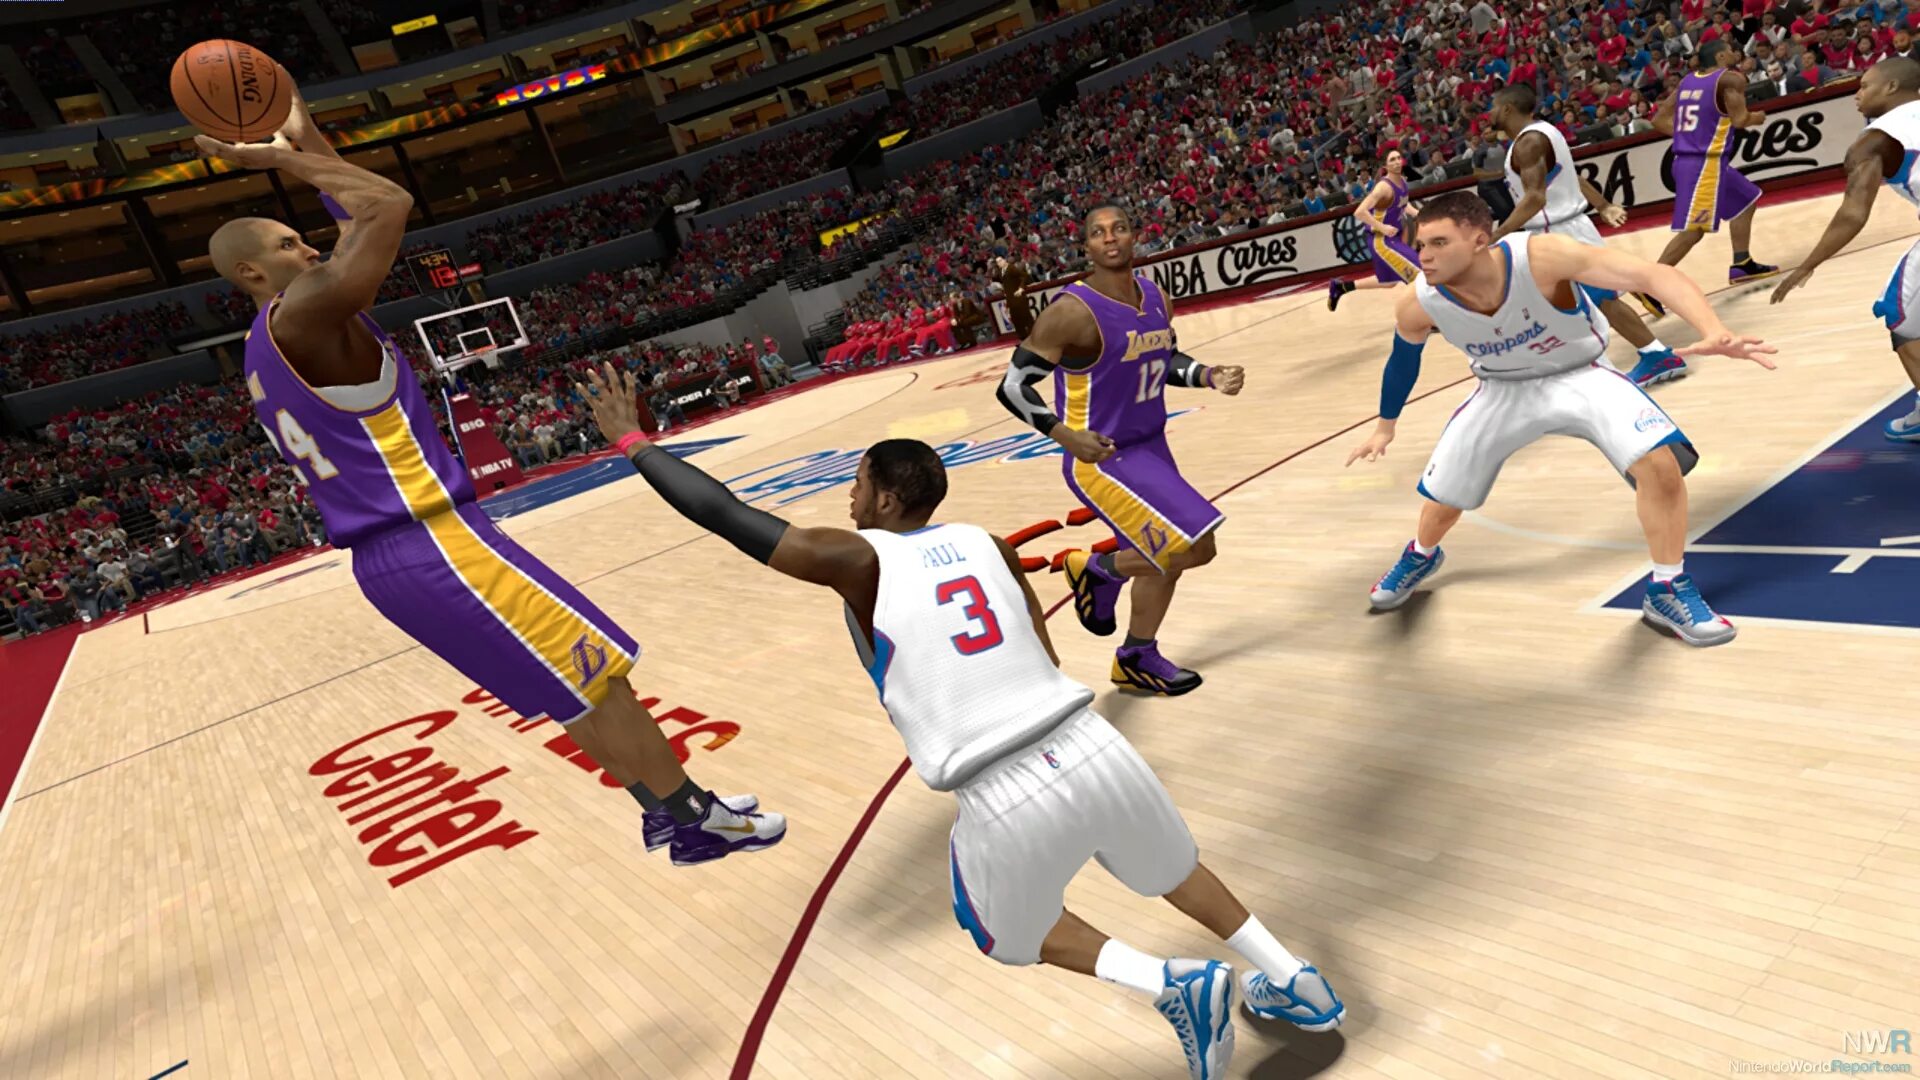 Sami games. NBA 2k13. NBA 2k13 (PSP). NBA 2k игра. NBA 2k13 Wii u.